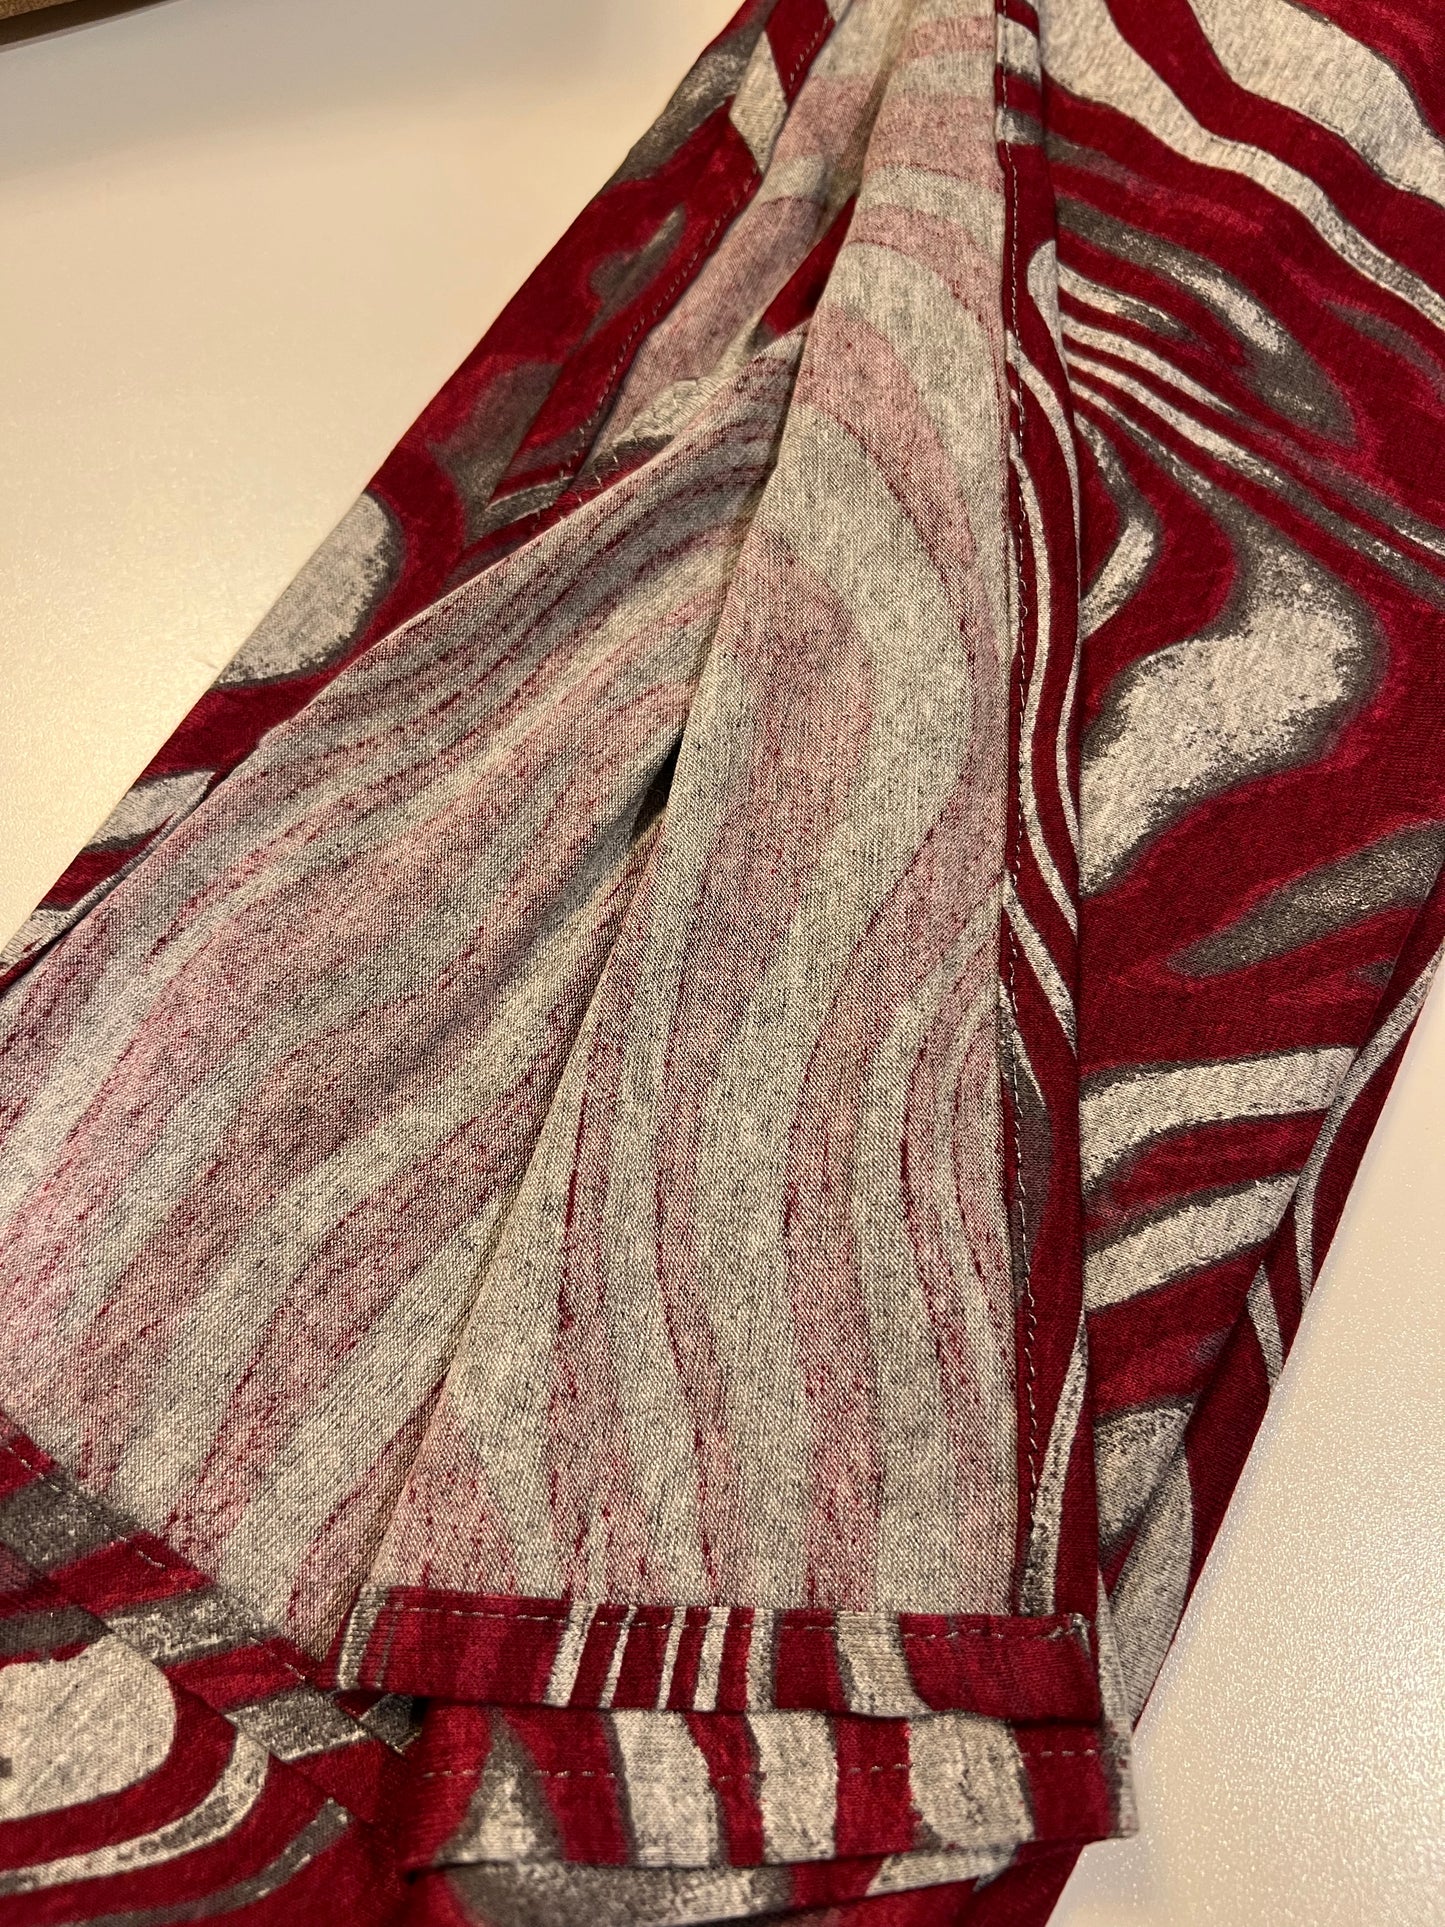 Printed Jersey Hijab: Crimson Zebra